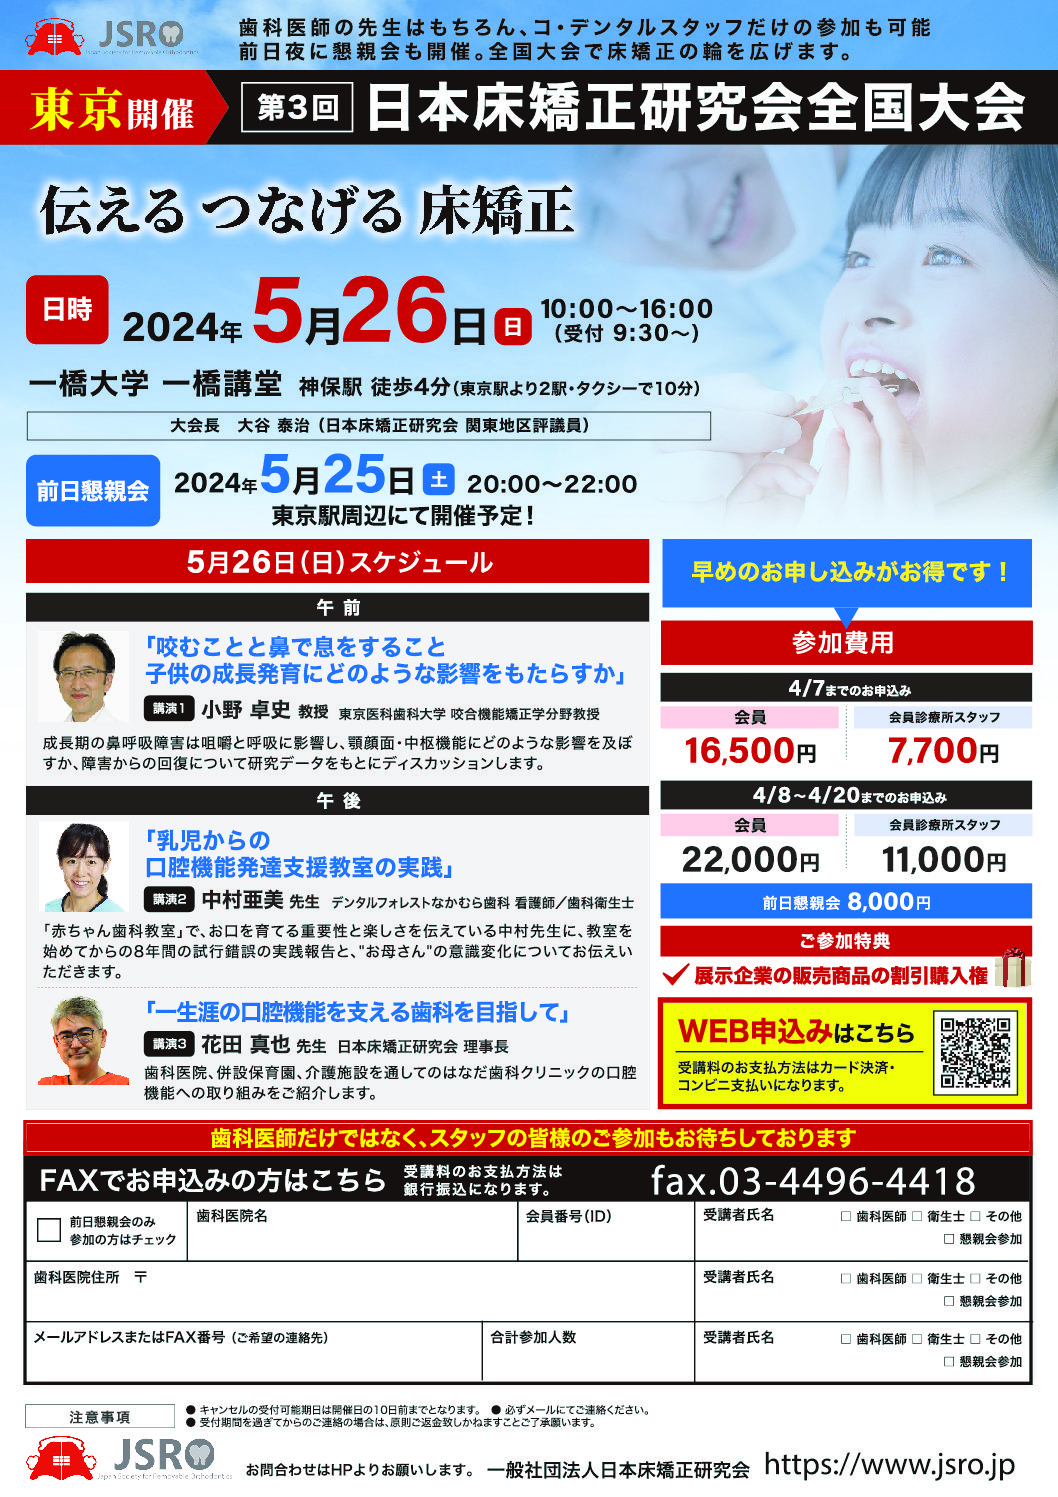 学術セミナー | 一般社団法人 日本床矯正研究会